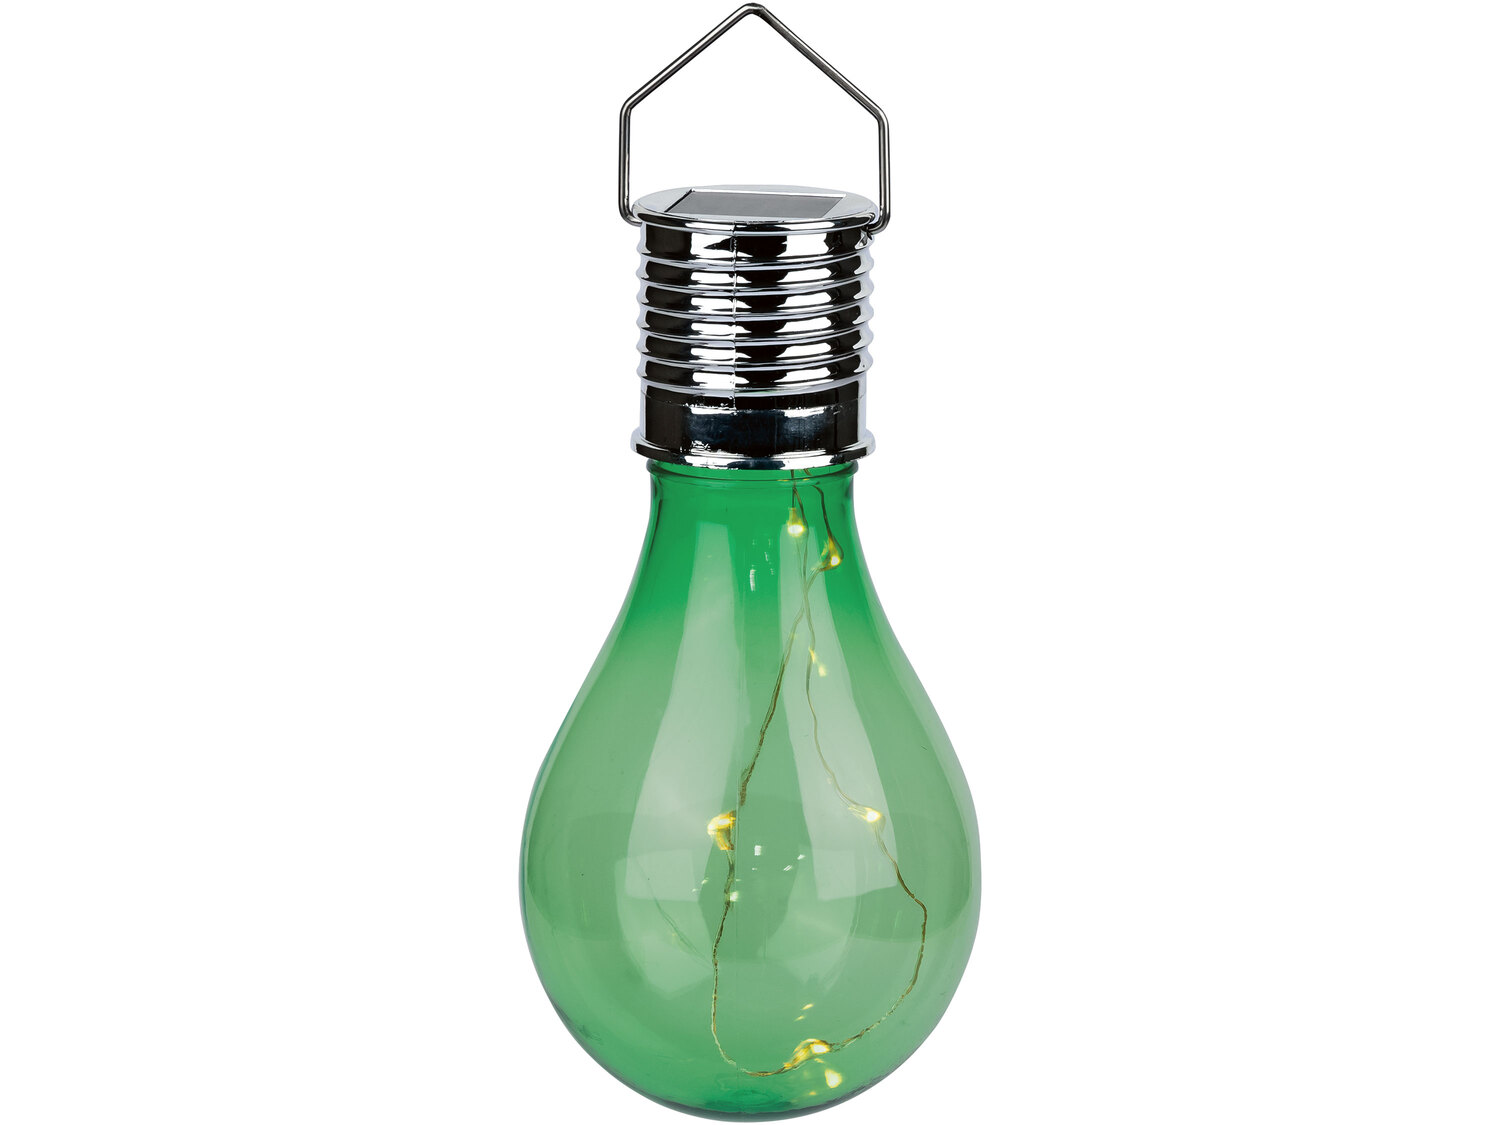 Dekoracyjna lampa solarna Melinera, cena 9,99 PLN 
4 kolory 
- włącza się automatycznie ...